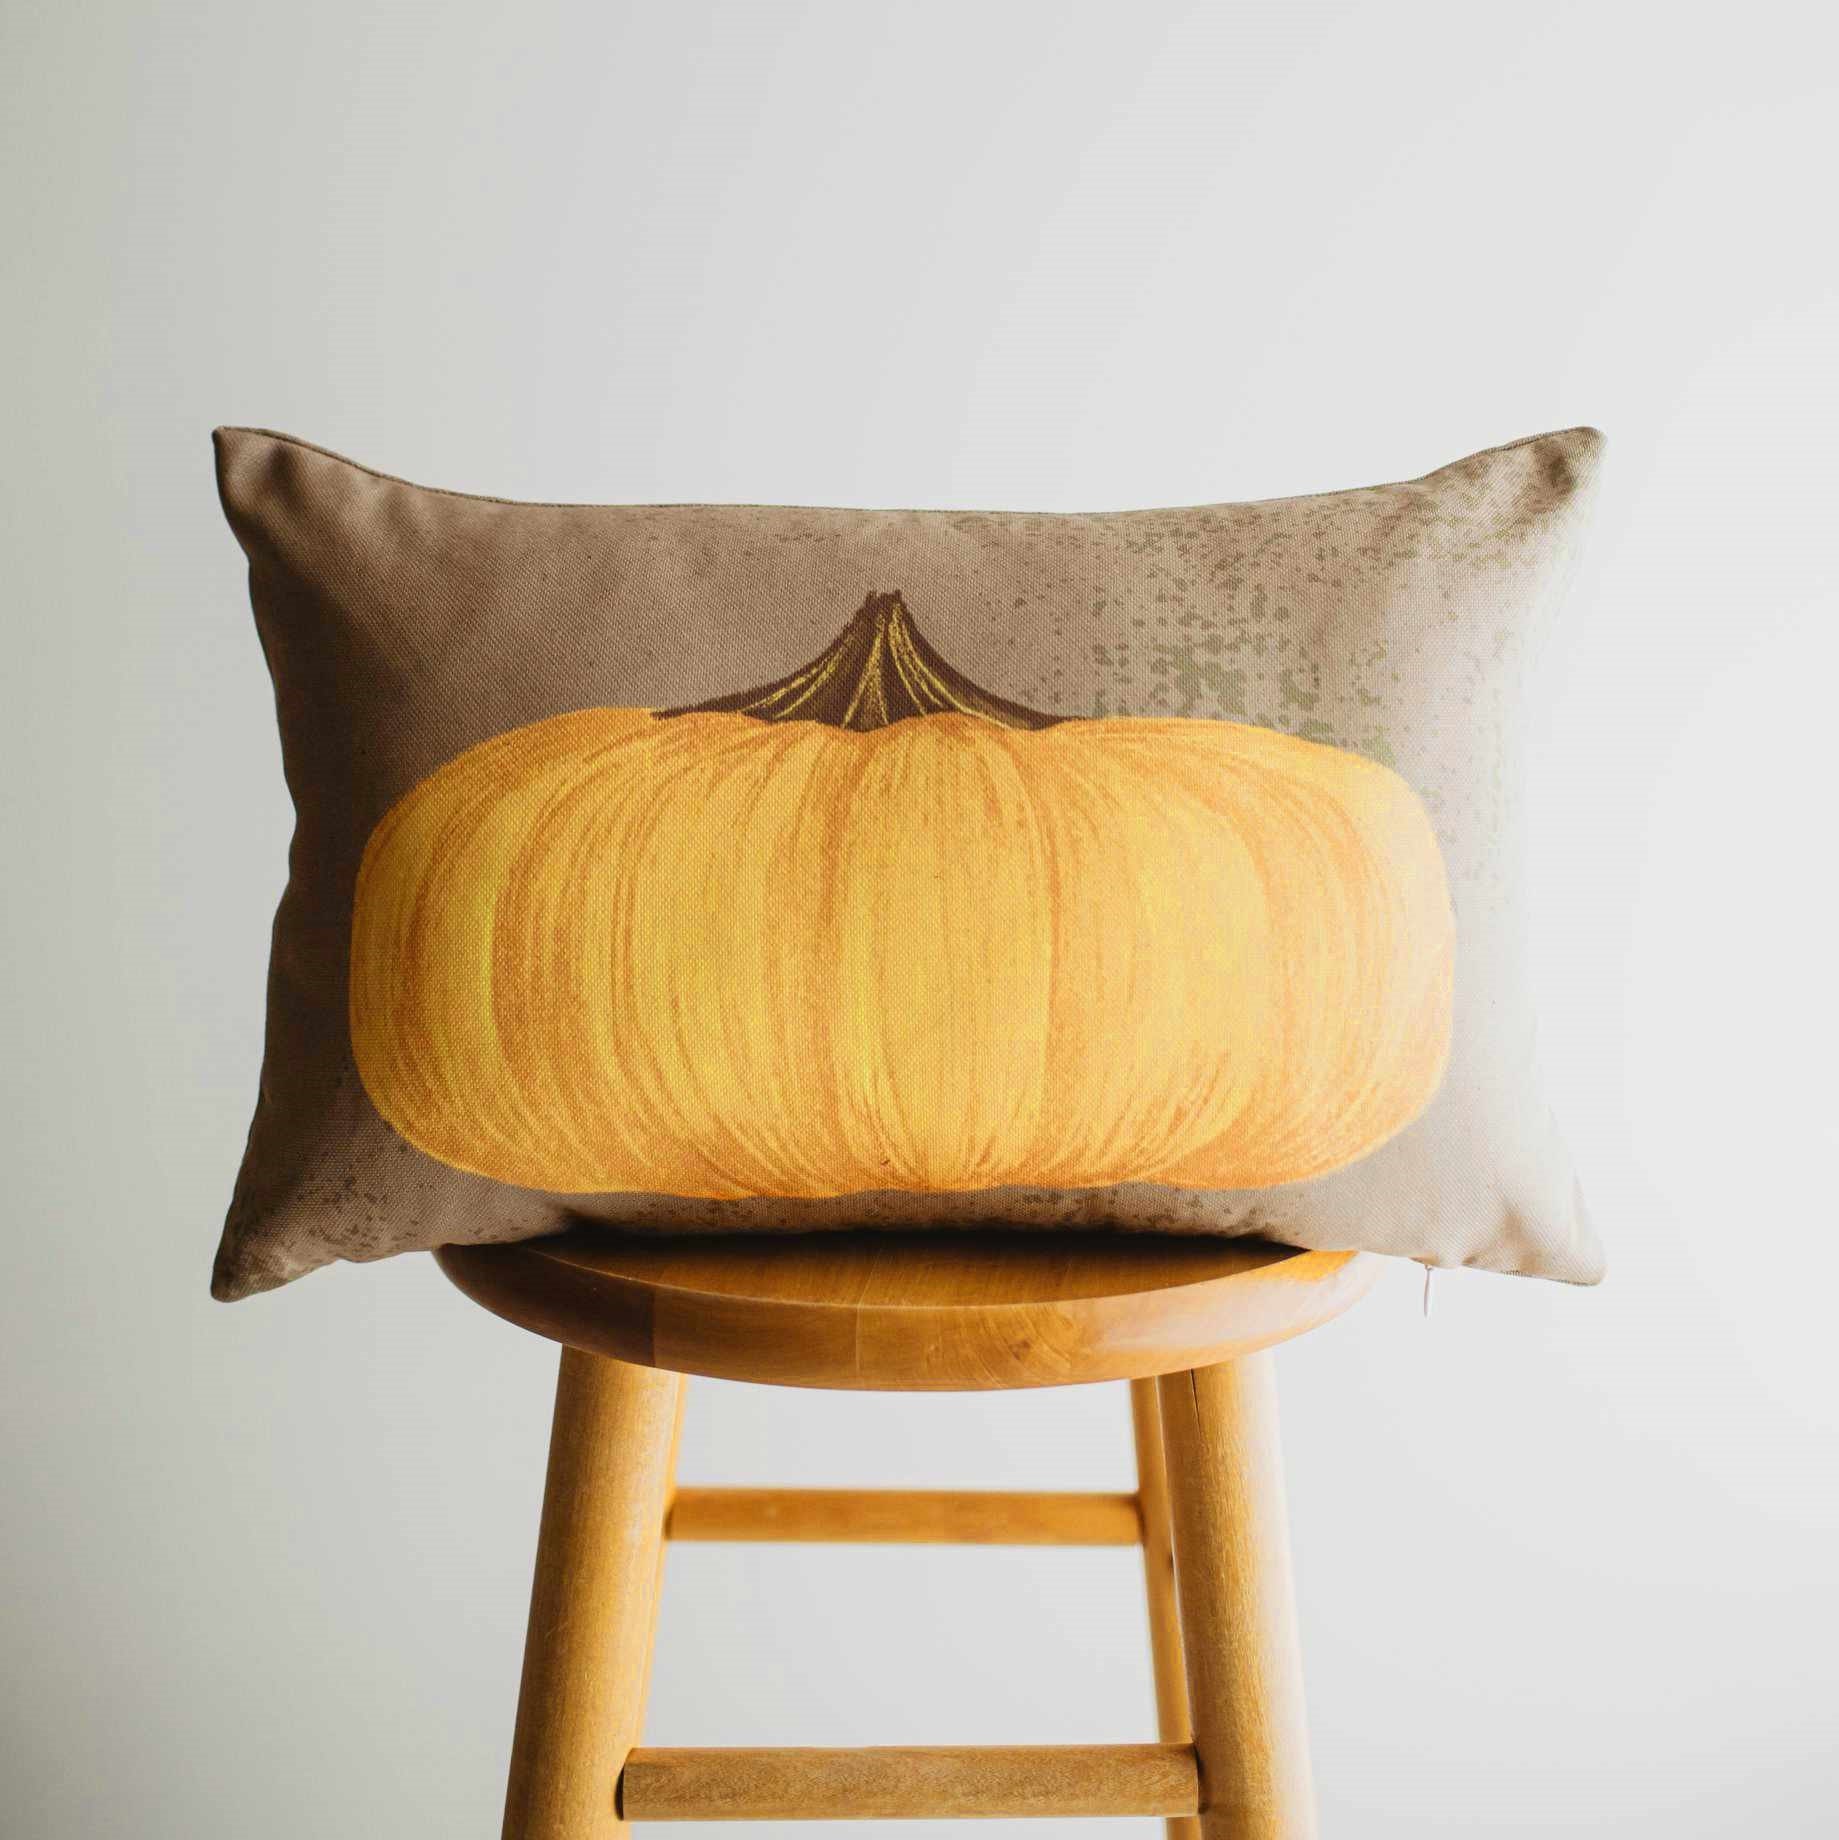 https://teeholly.com/wp-content/uploads/2021/10/primitive-flat-fall-pumpkin-lumbar-pillow_1633890126.jpg